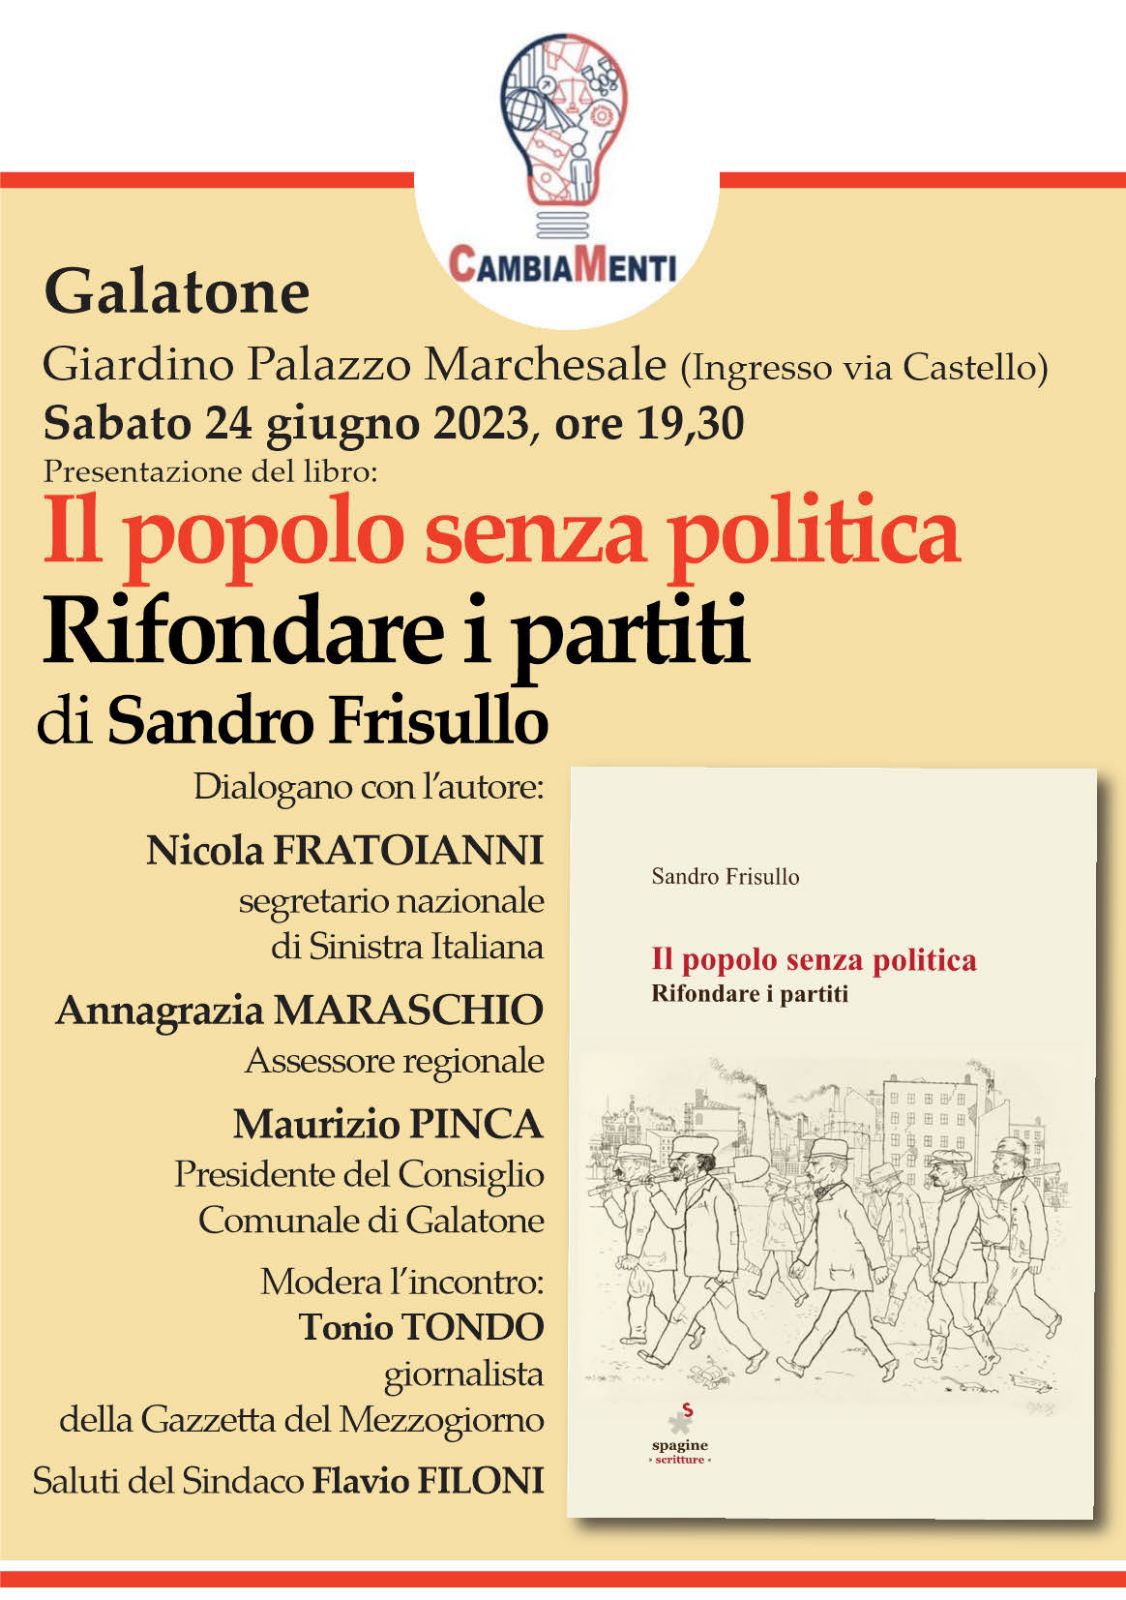 Sandro Frisullo e Fratoianni domani a Galatone.